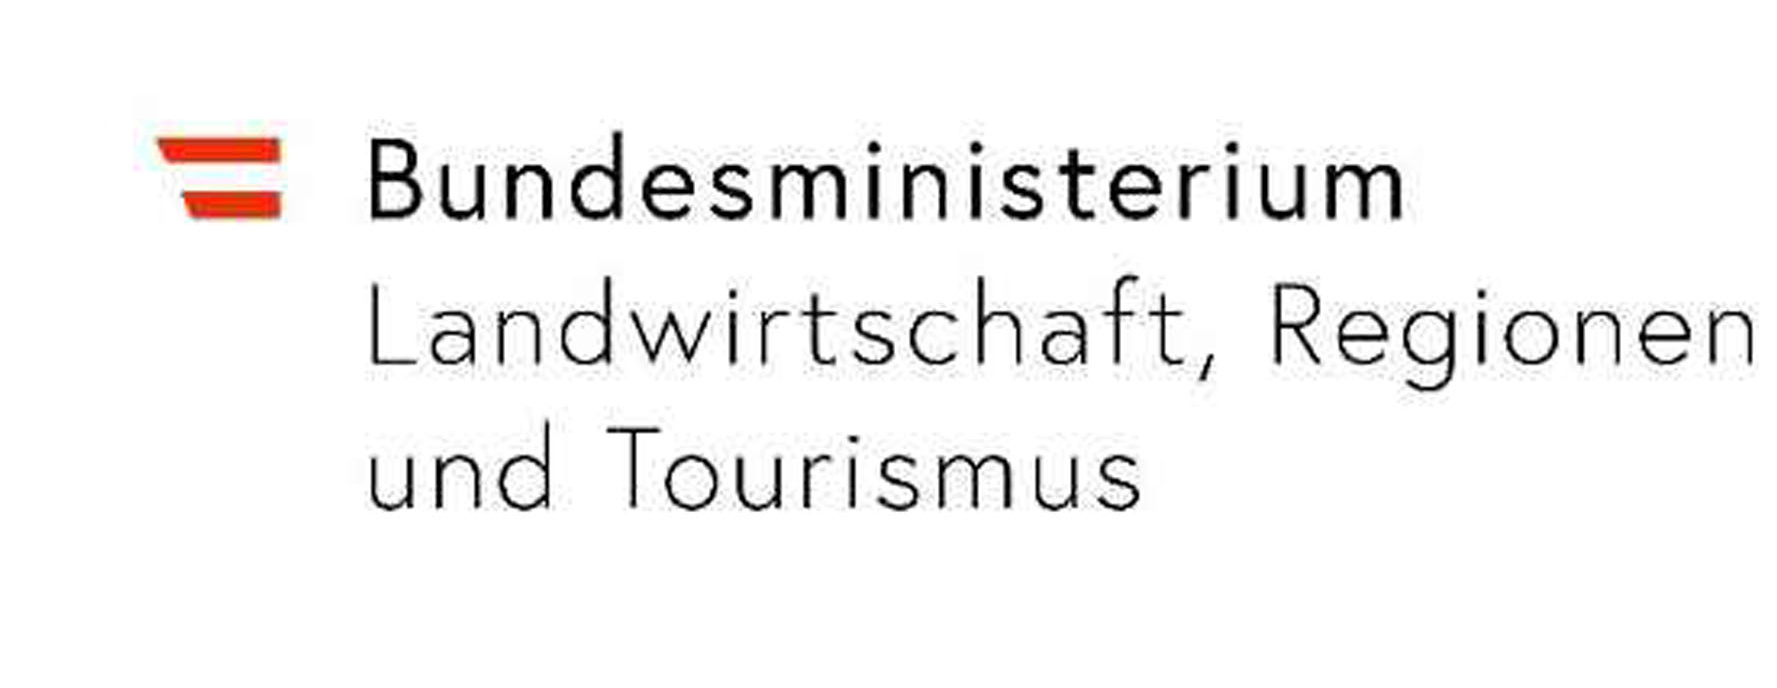 1 wieshofermuehle ministerium logo